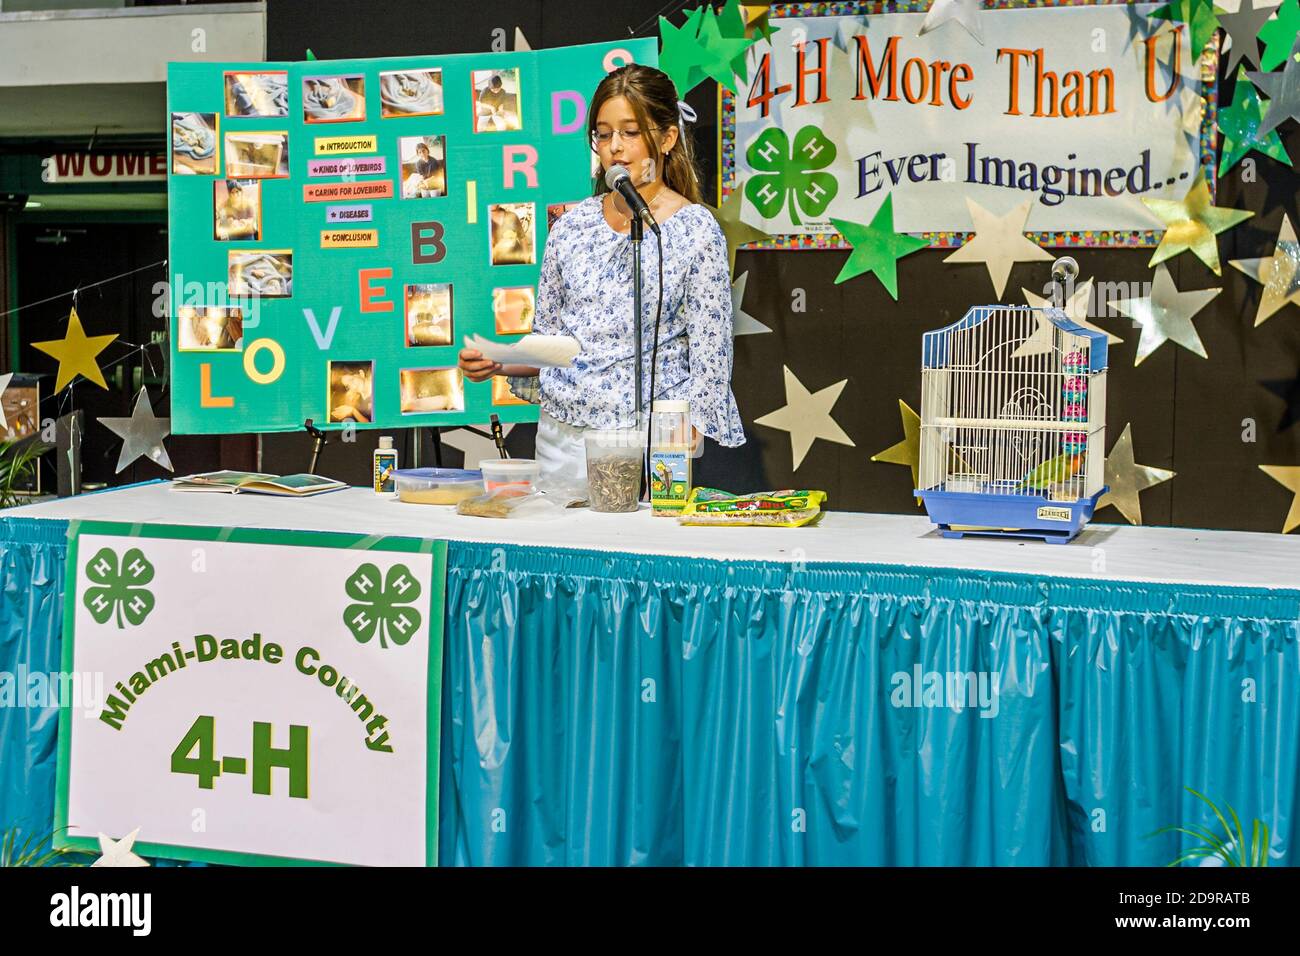 Miami Florida, Dade County Fair & Exposition, jährliche Veranstaltung Jugendprogramme Ausstellungen 4-H Club, öffentlich sprechender Wettbewerb Teenager Student Mädchen makin Stockfoto